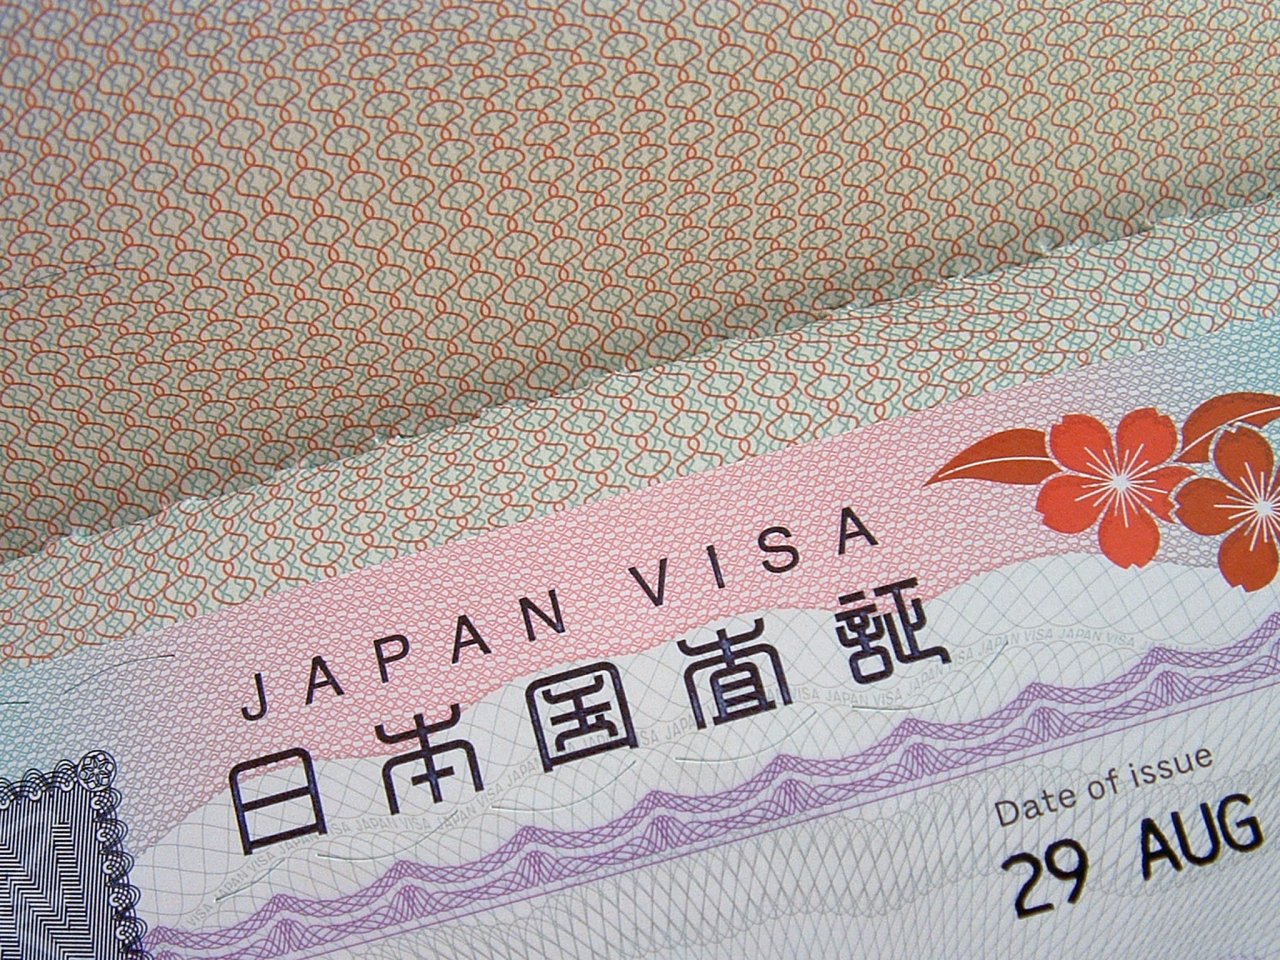 اليابان تبدأ بمنح تأشيرات سفر للعراقيين من بغداد واربيل